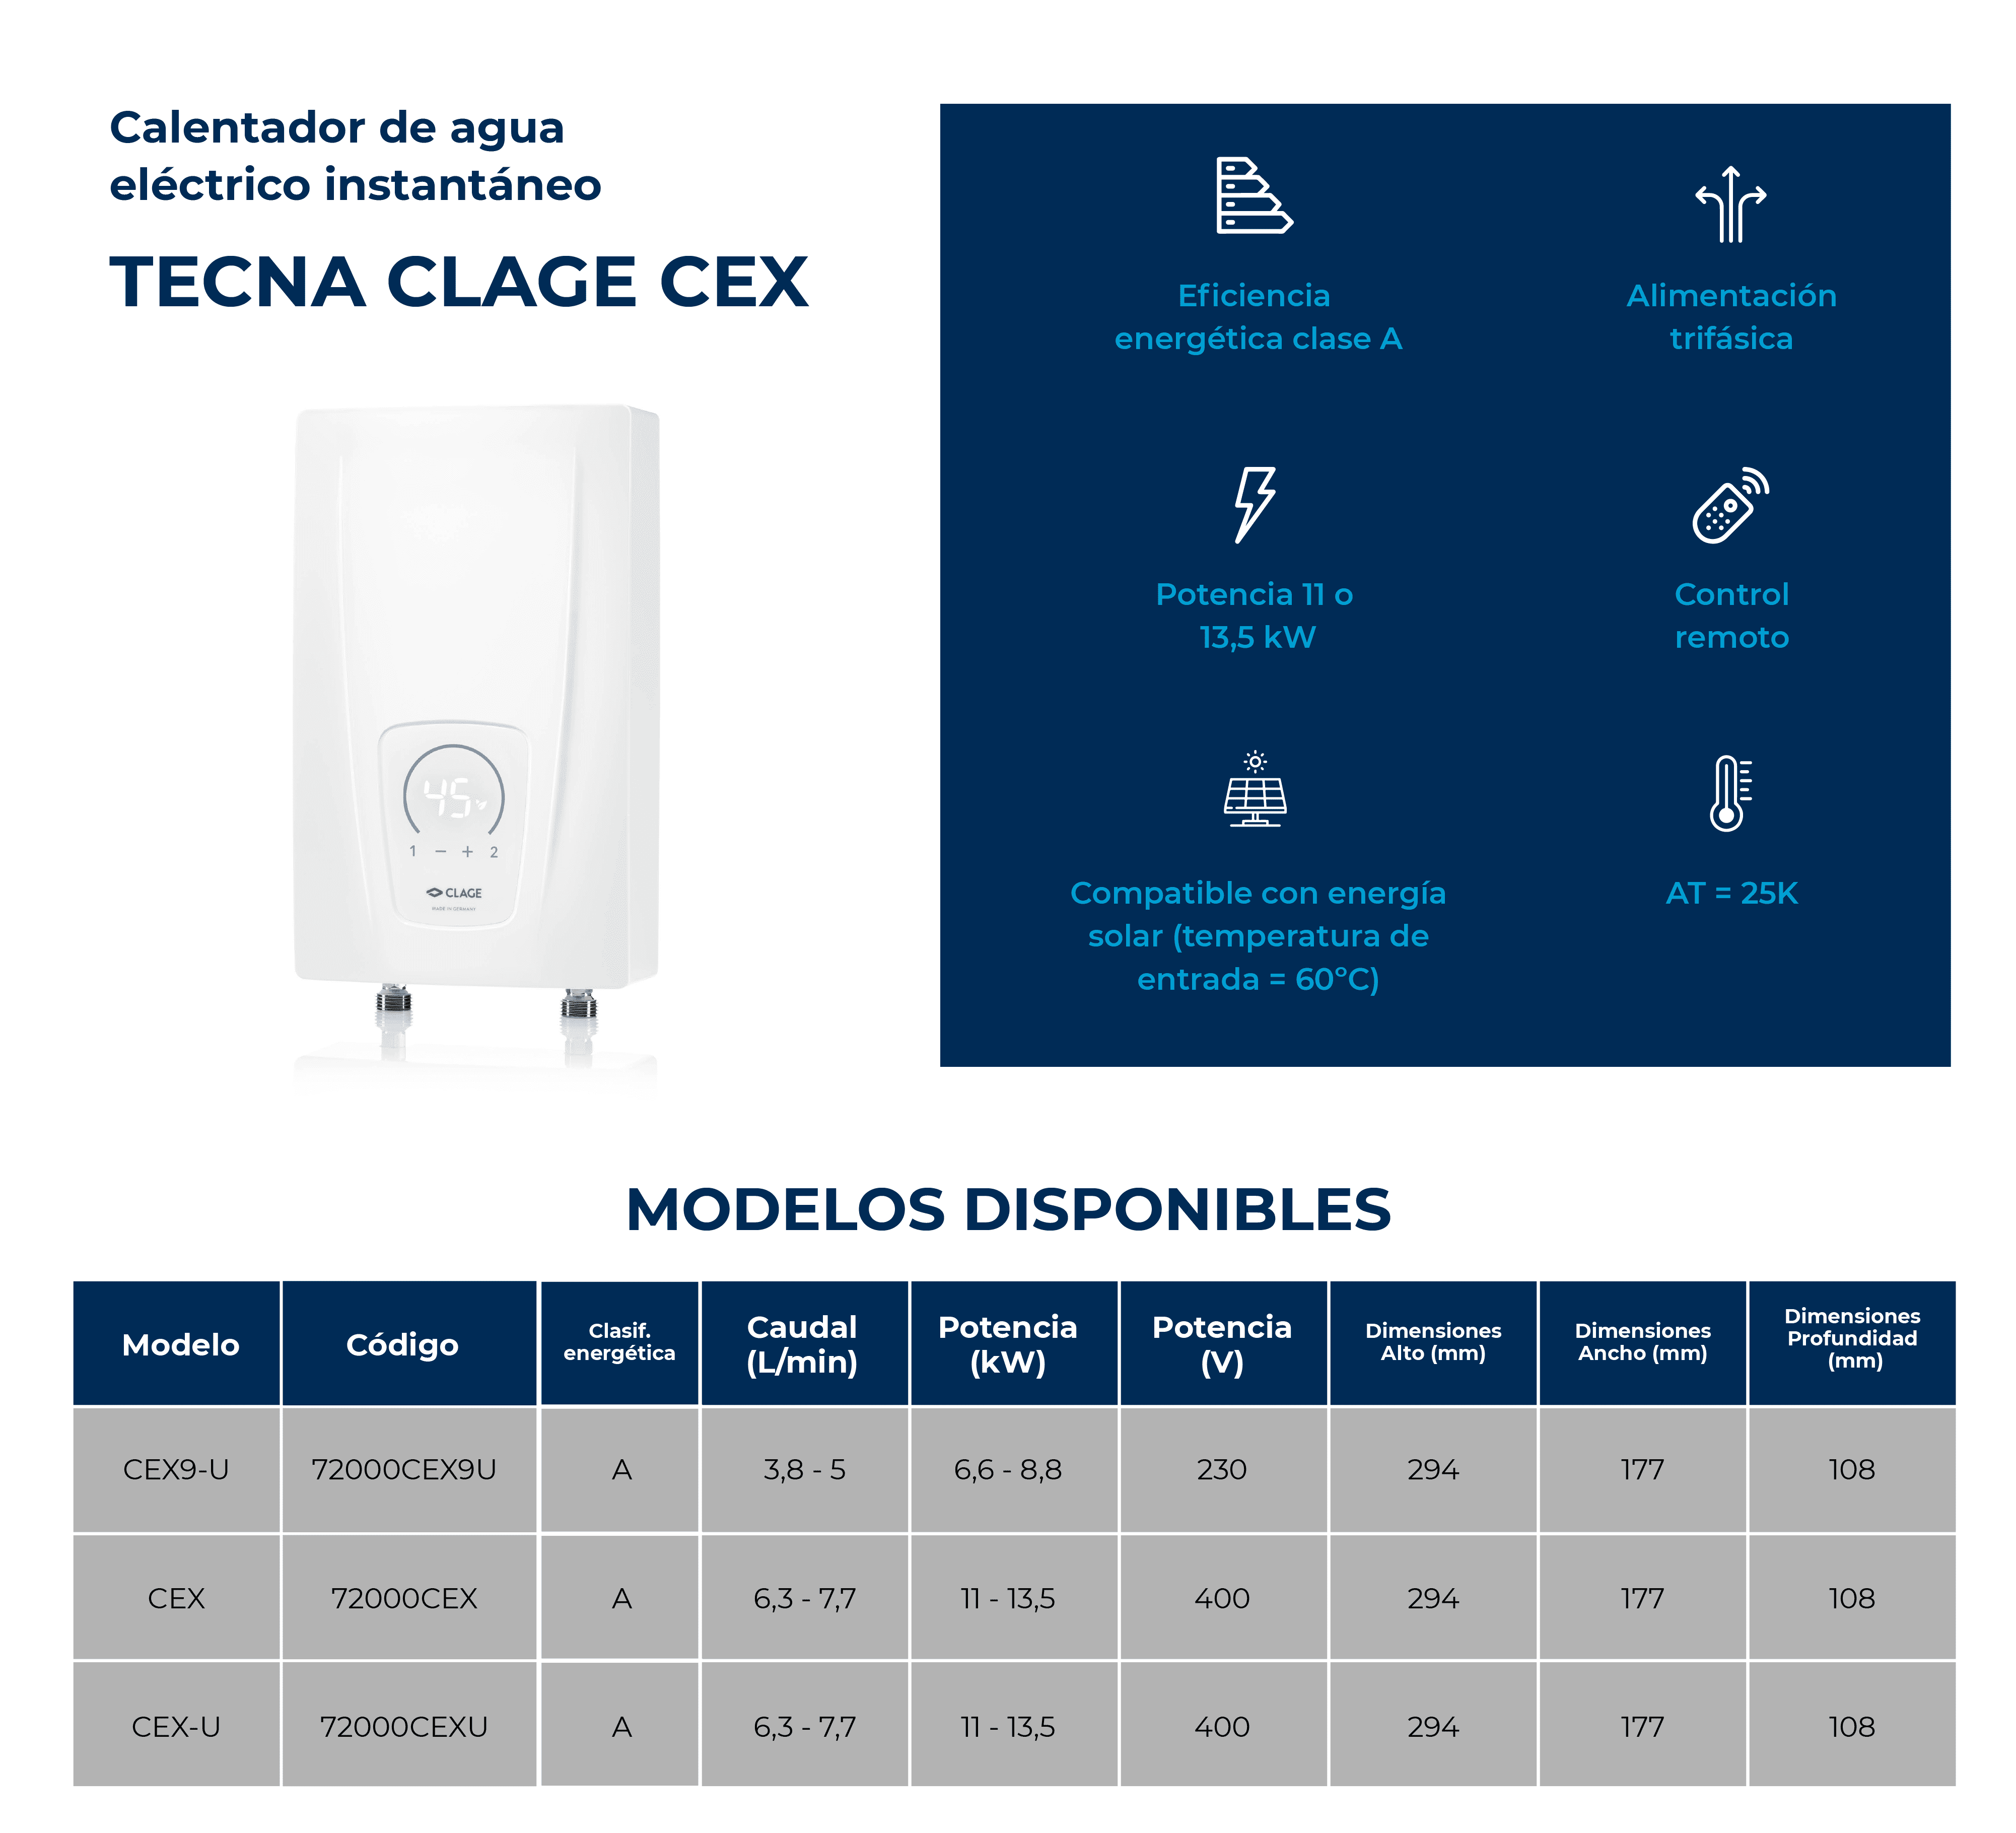 Calentador eléctrico instanáneo TECNA CLAGE CEX 